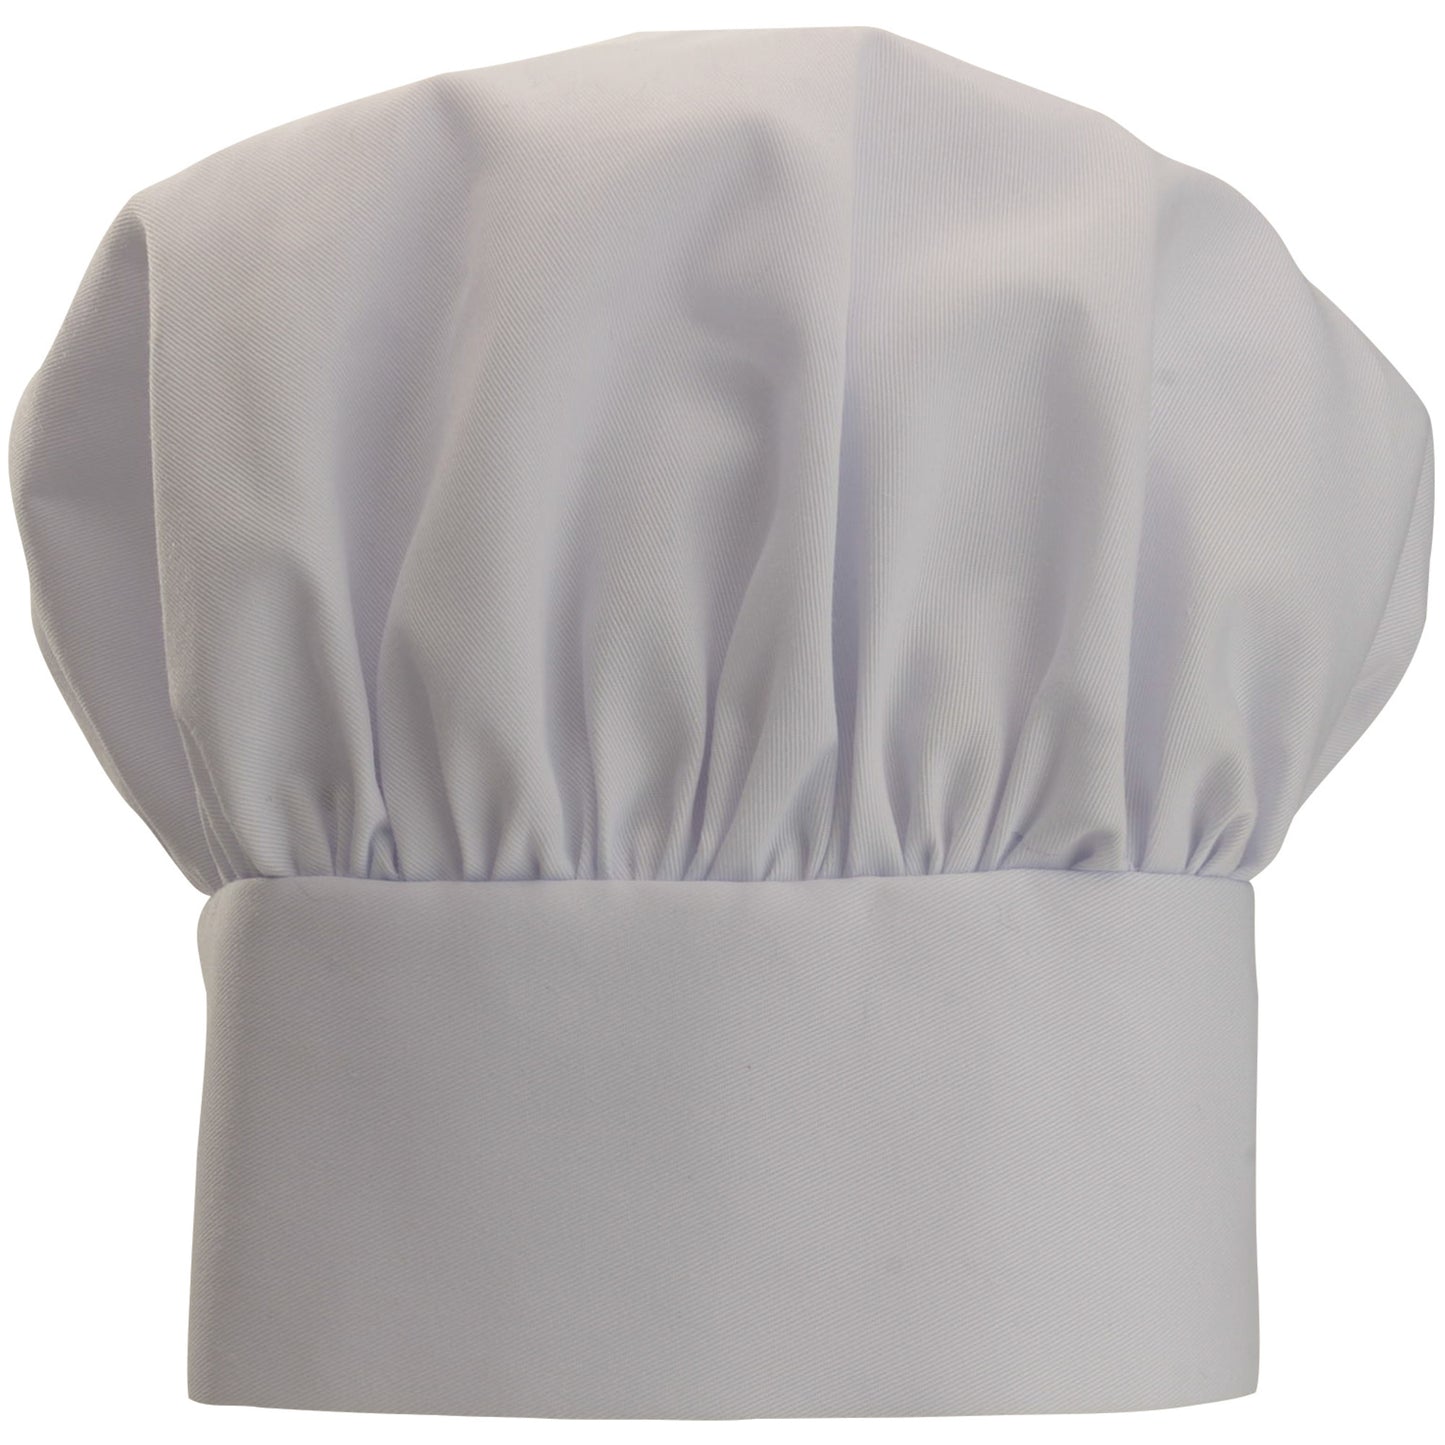 CH-13WH - Chef Hat, Velcro Closure - White